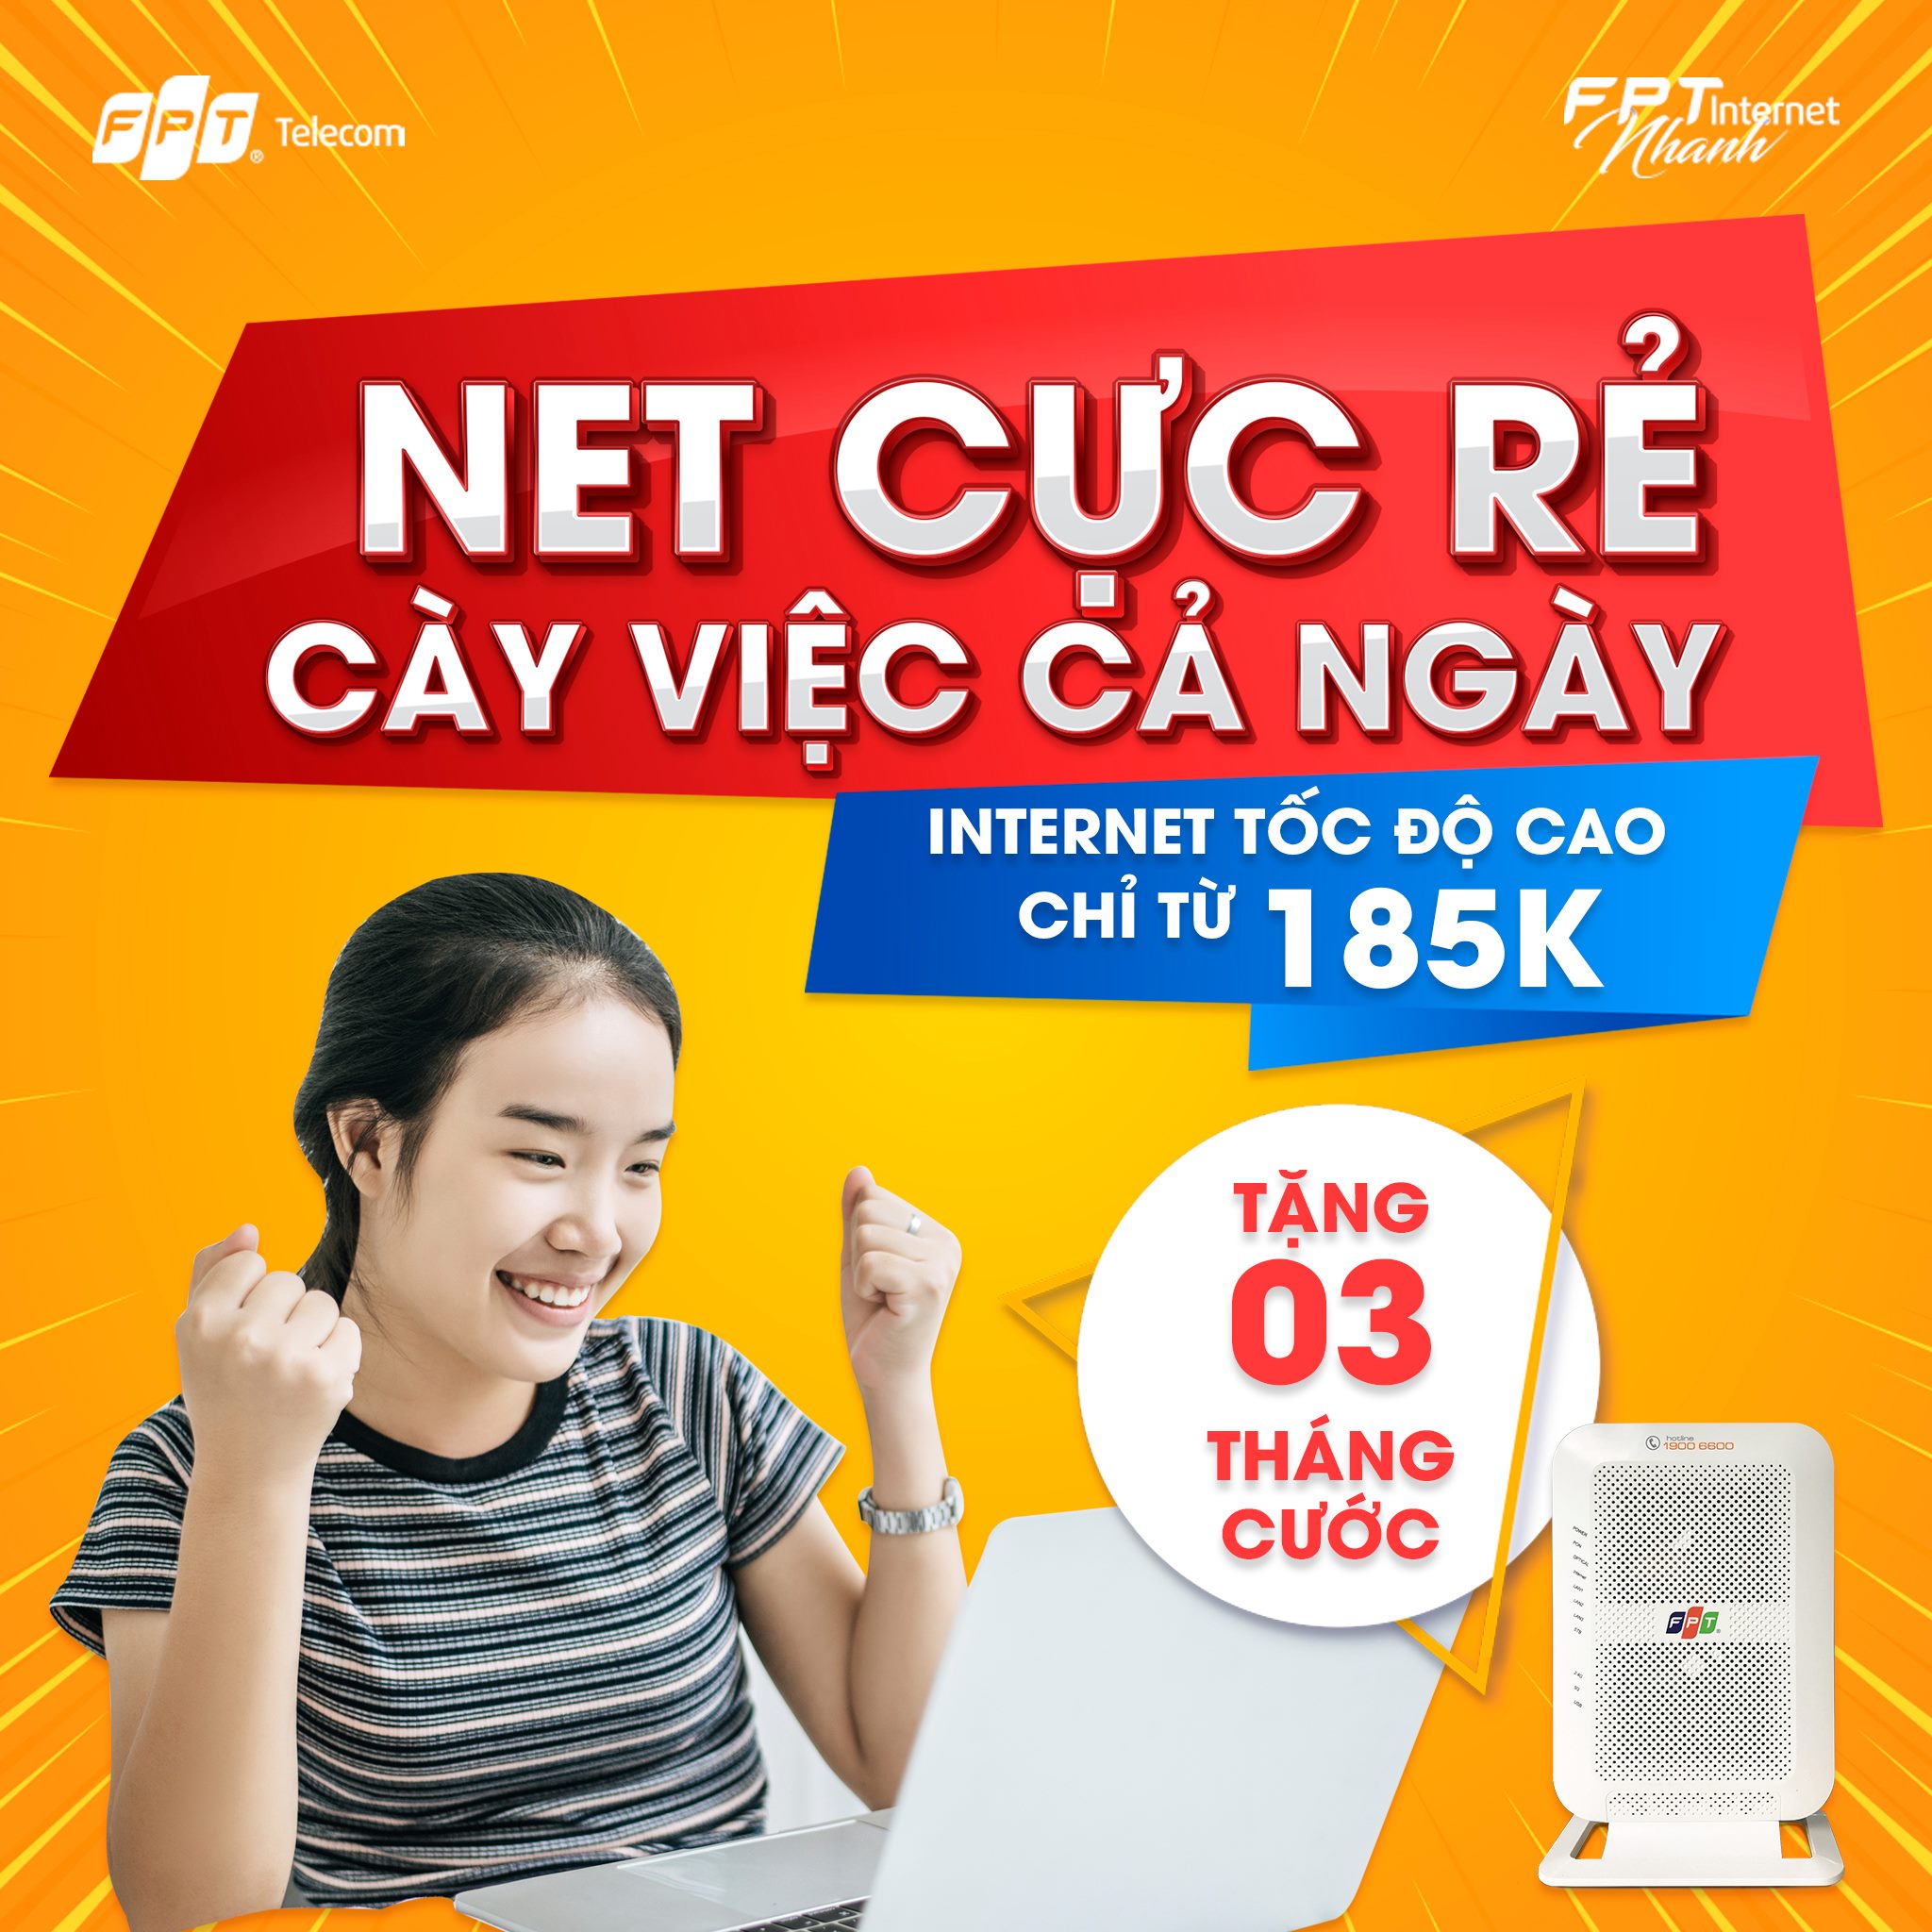 Lắp mạng FPT tại Hà Giang với giá cước siêu rẻ